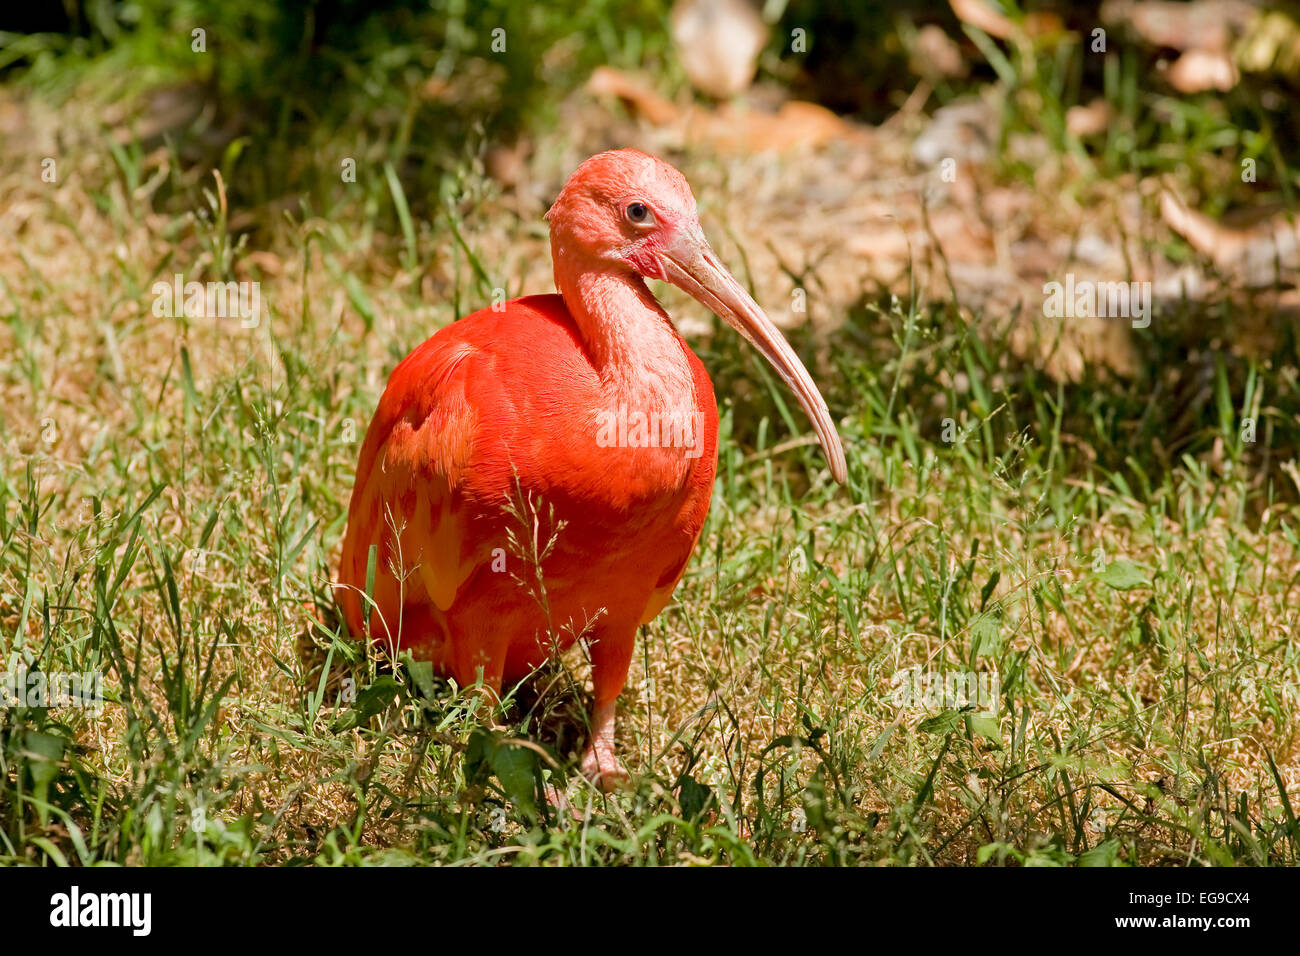 Scarlet ibis, scarlet ibis (Eudocimus ruber) Stock Photo